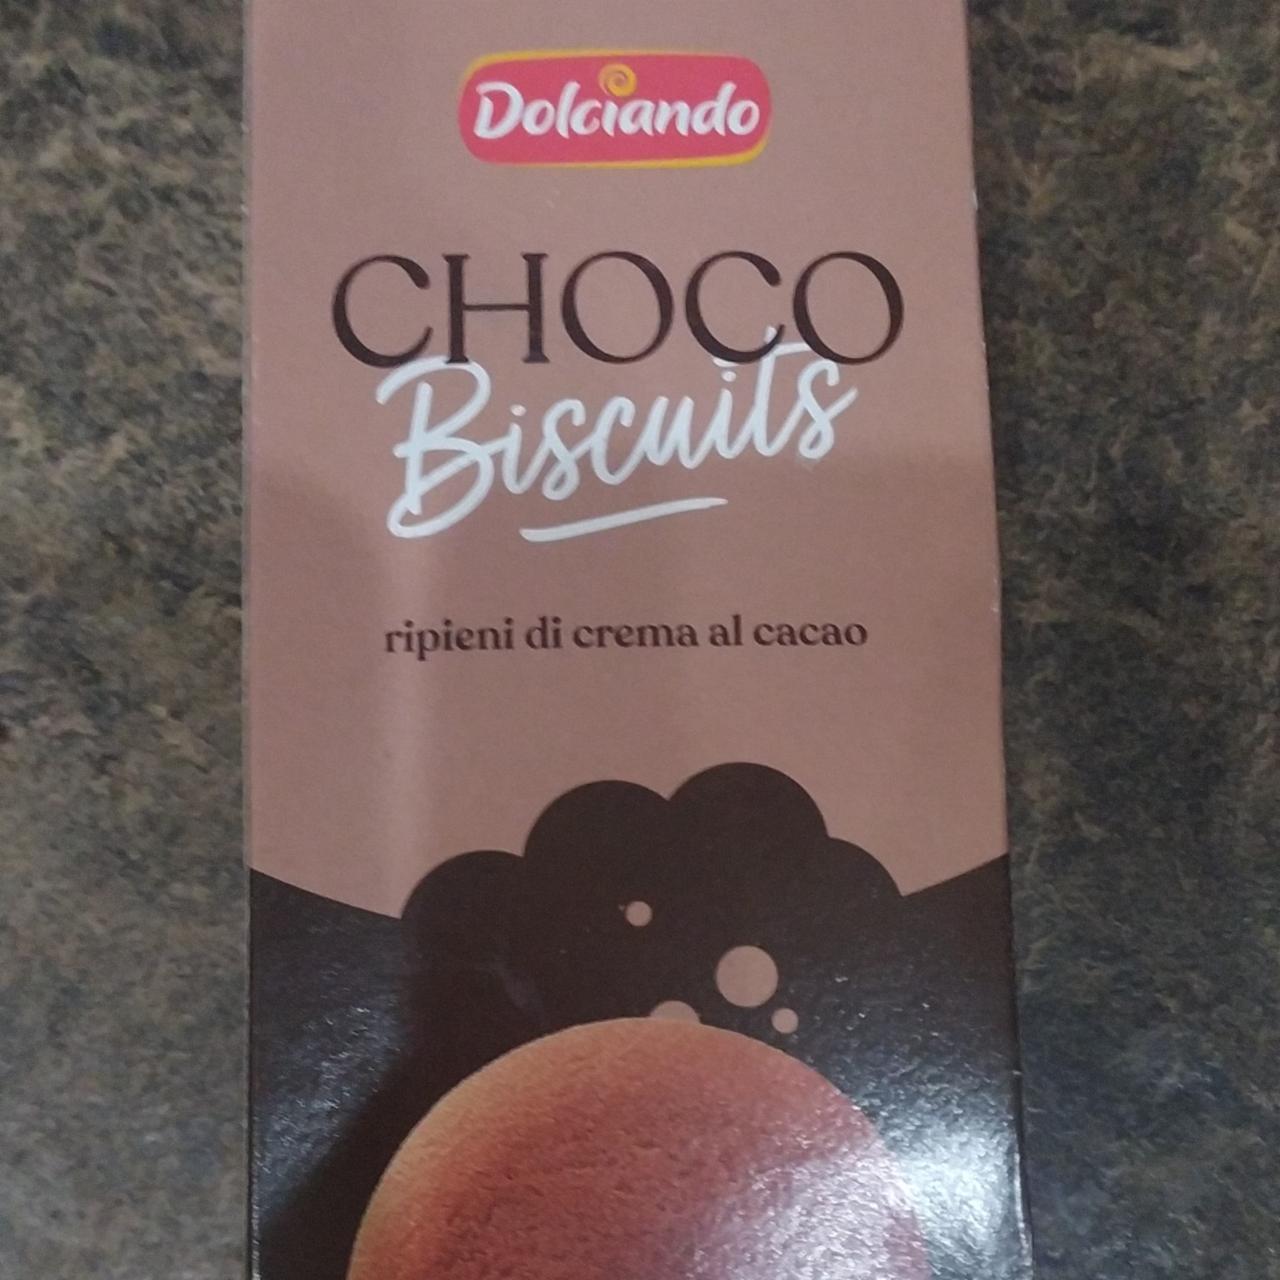 Fotografie - Choco Biscuits Dolciando